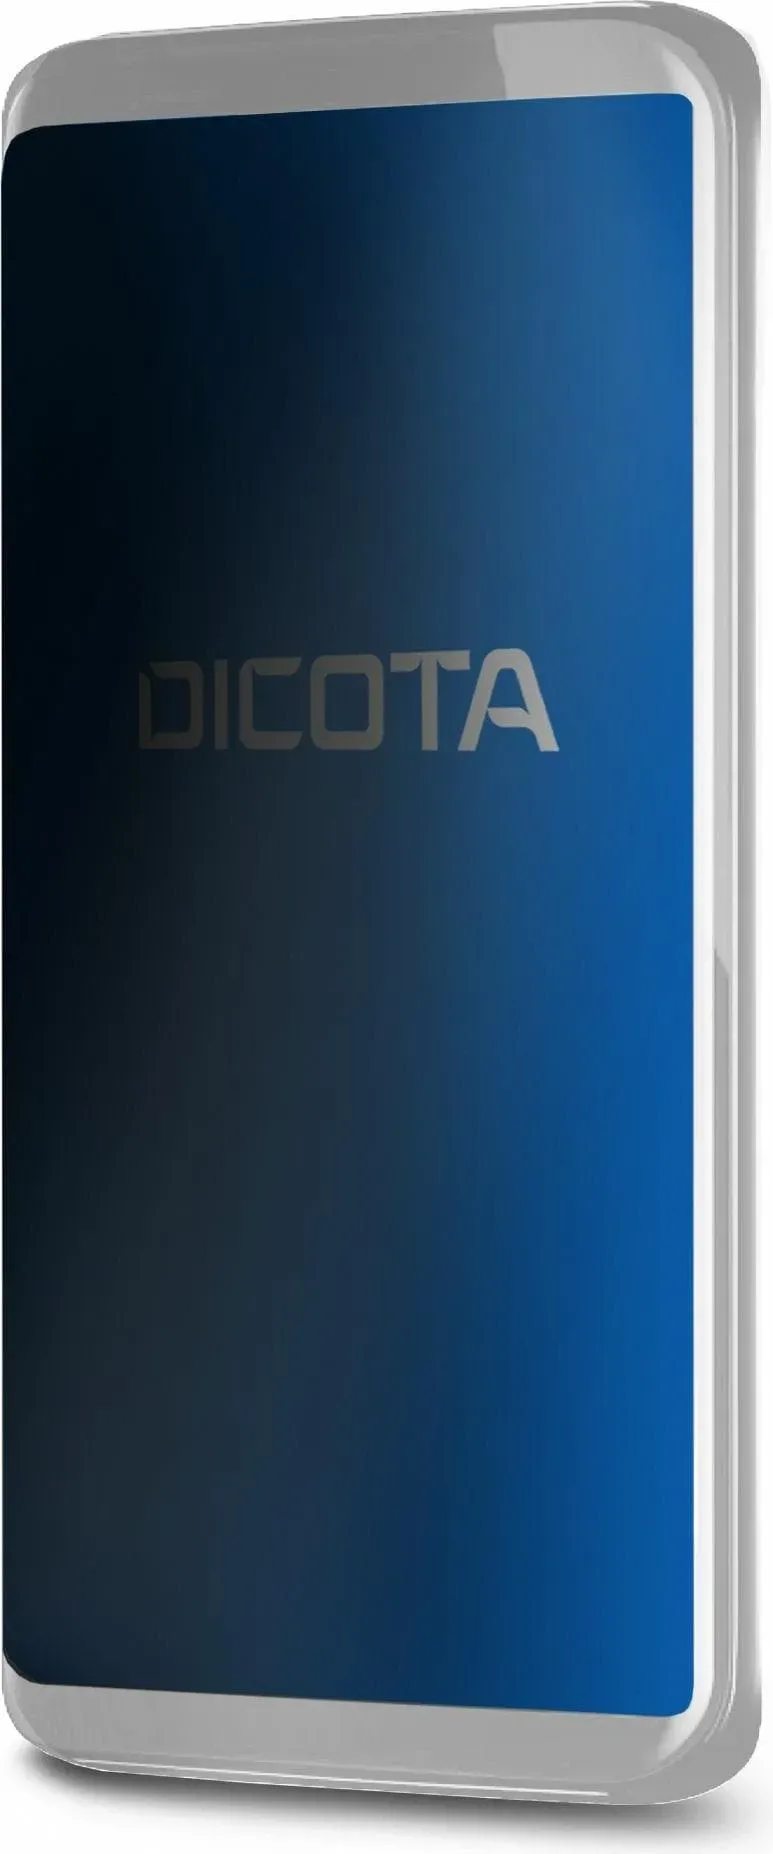 Dicota Secret 2-Way Rahmenloser Blickschutzfilter (4.70"), Bildschirmfolie